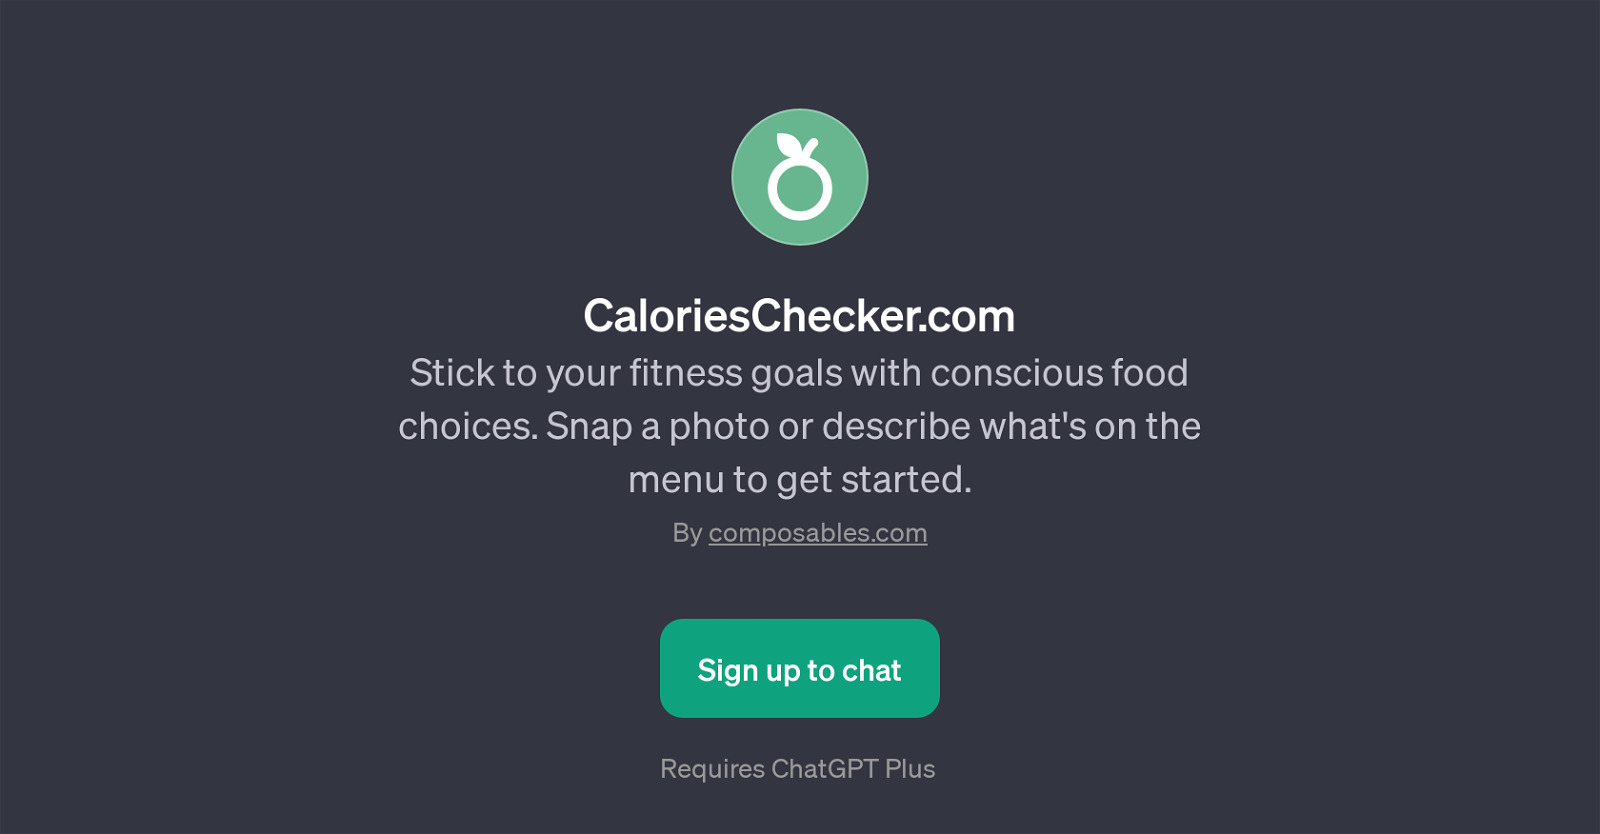 CaloriesChecker.com website